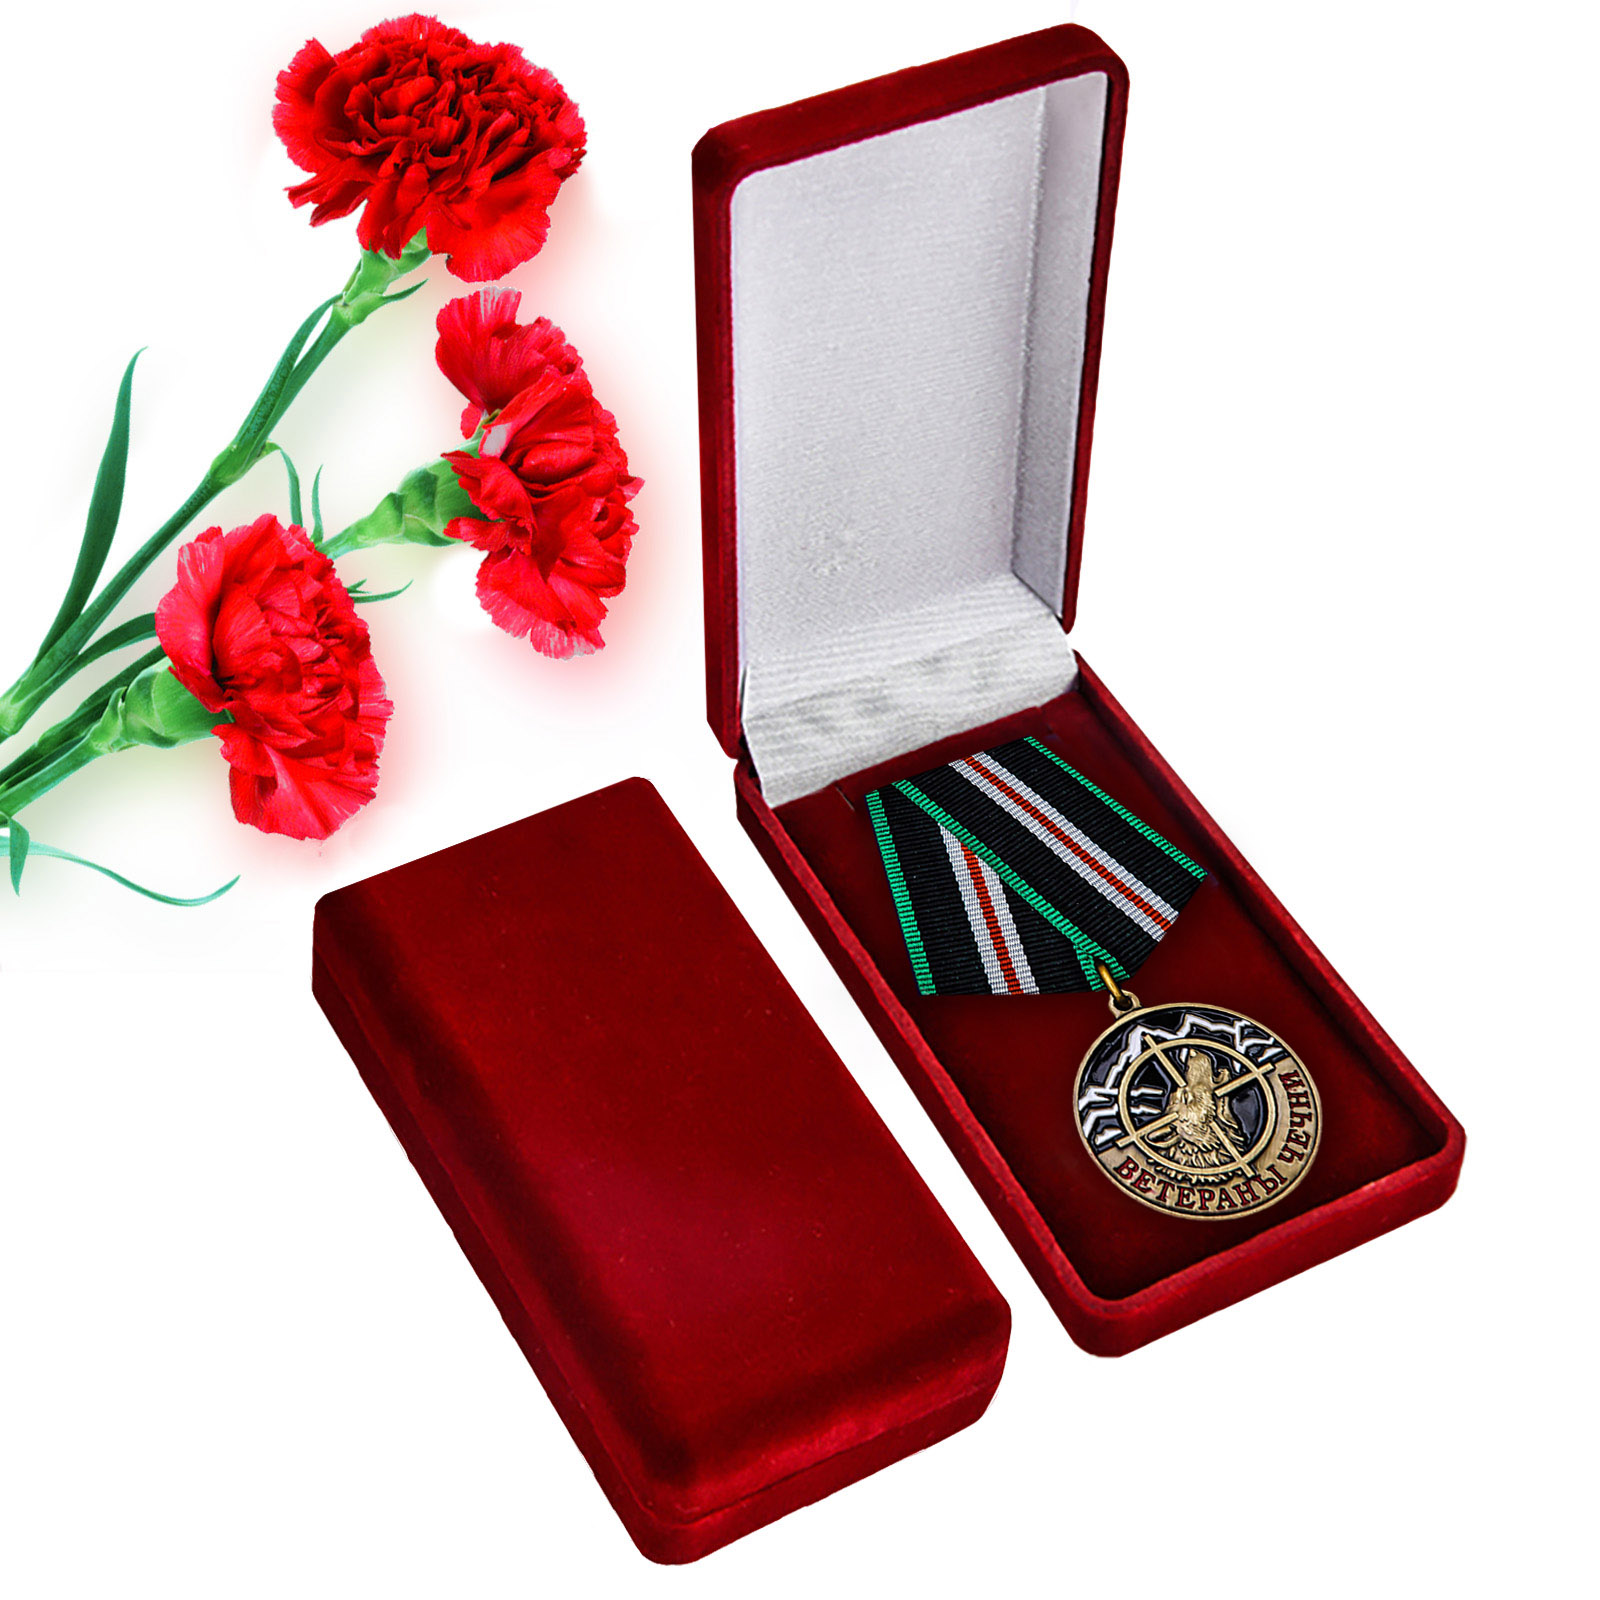 Купить памятную медаль Ветераны Чечни по лучшей цене